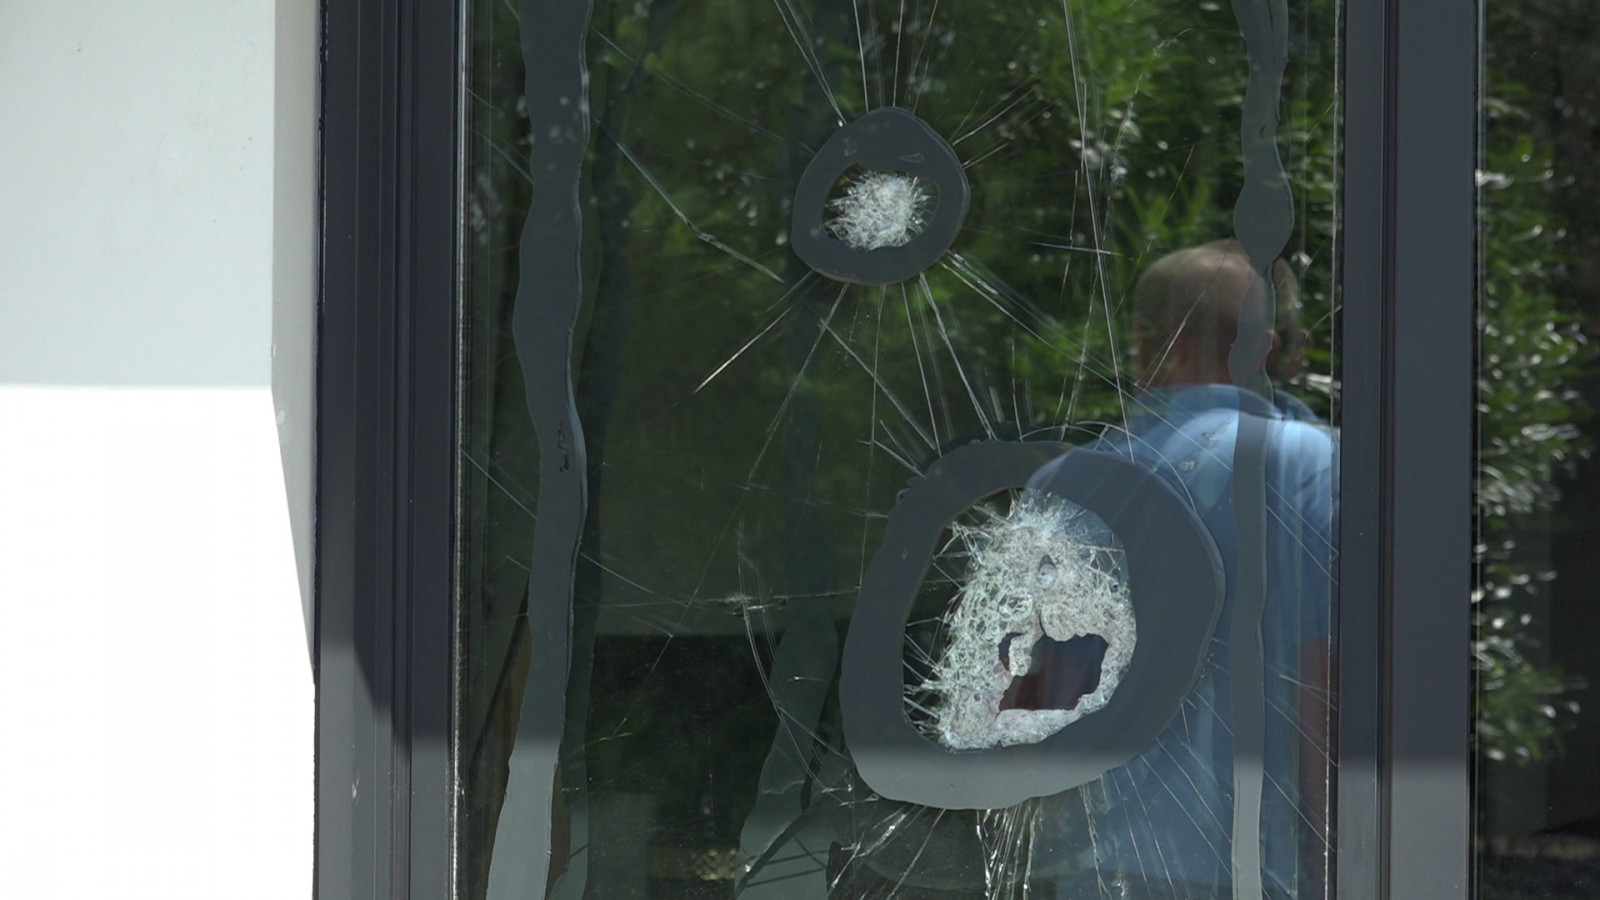 Met een hamer hebben de daders geprobeerd het raam kapot te maken